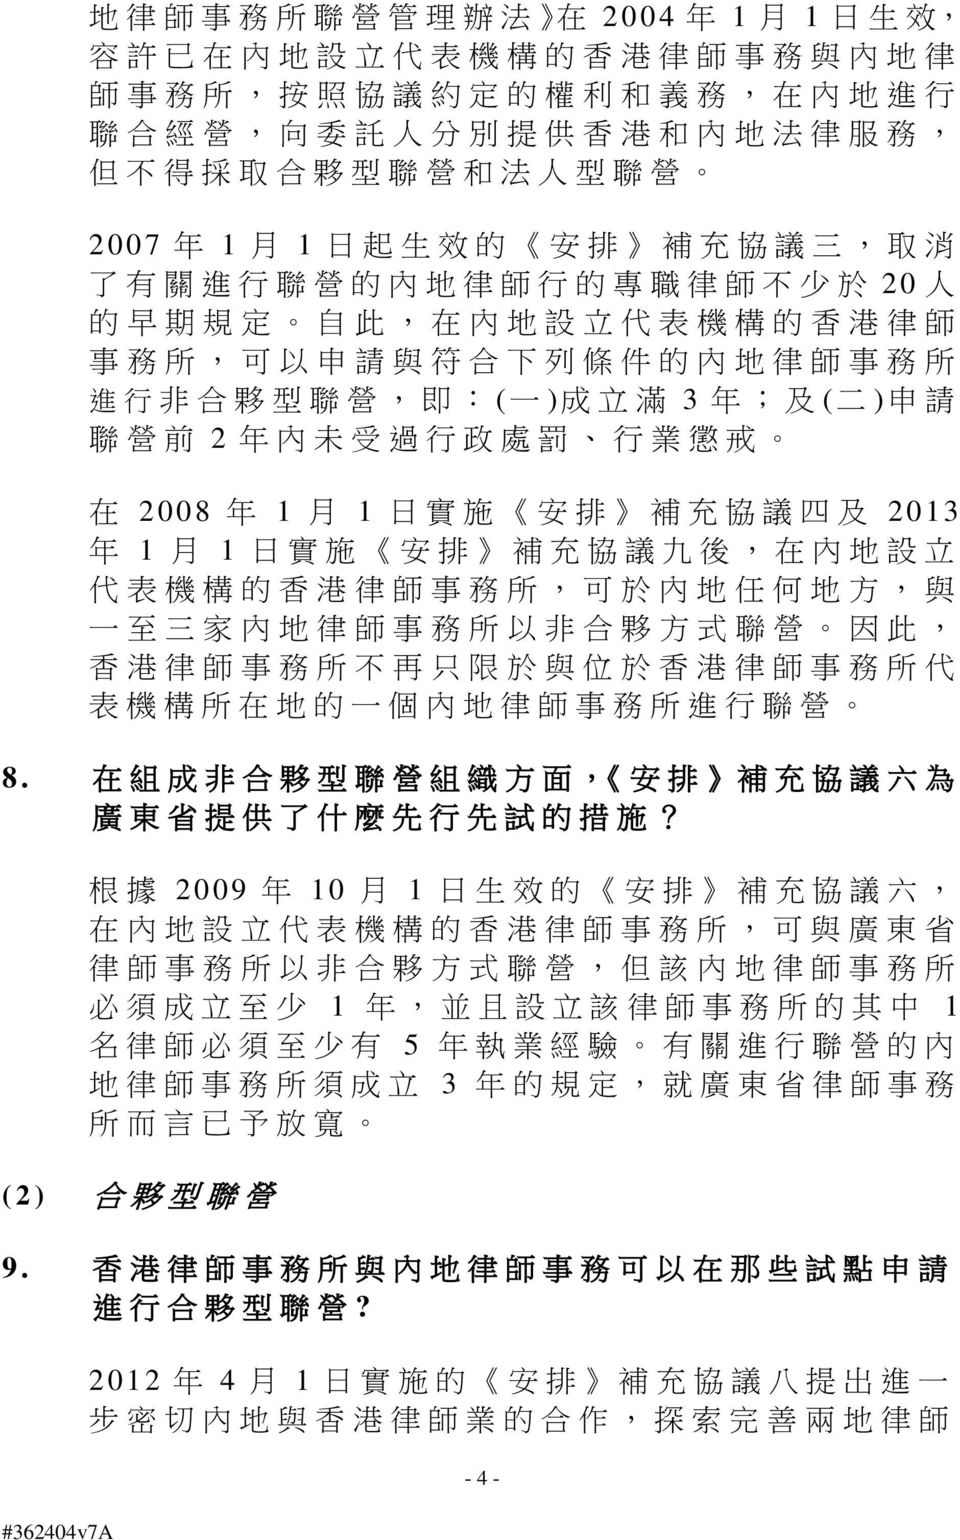 夥 型 聯 營, 即 : ( 一 ) 成 立 滿 3 年 ; 及 ( 二 ) 申 請 聯 營 前 2 年 內 未 受 過 行 政 處 罰 行 業 懲 戒 在 2008 年 1 月 1 日 實 施 安 排 補 充 協 議 四 及 2013 年 1 月 1 日 實 施 安 排 補 充 協 議 九 後, 在 內 地 設 立 代 表 機 構 的 香 港 律 師 事 務 所, 可 於 內 地 任 何 地